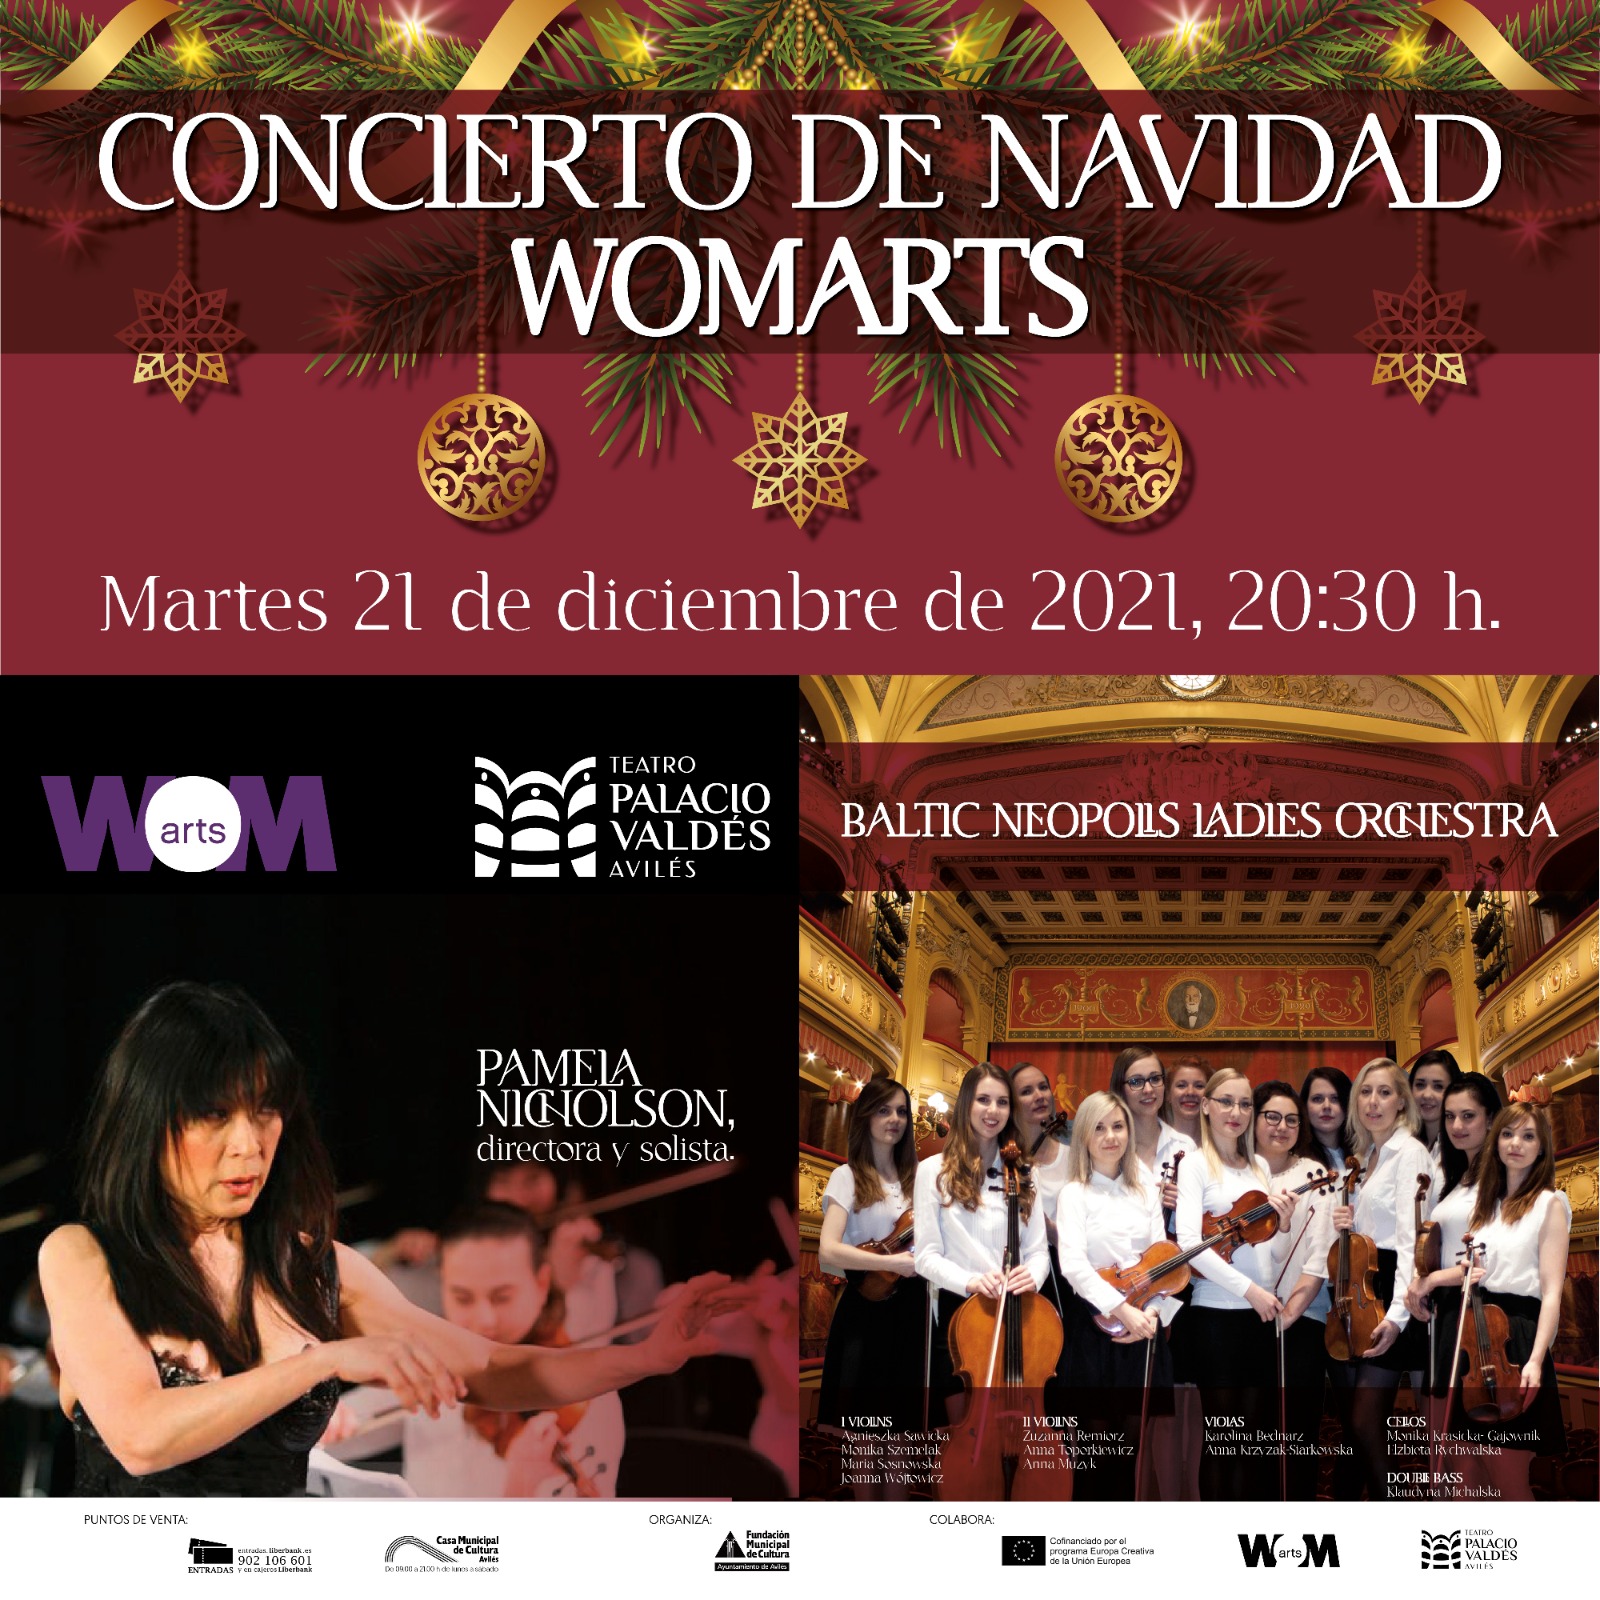 Wom@rts Sinfónico, » concierto de navidad único» en Avilés